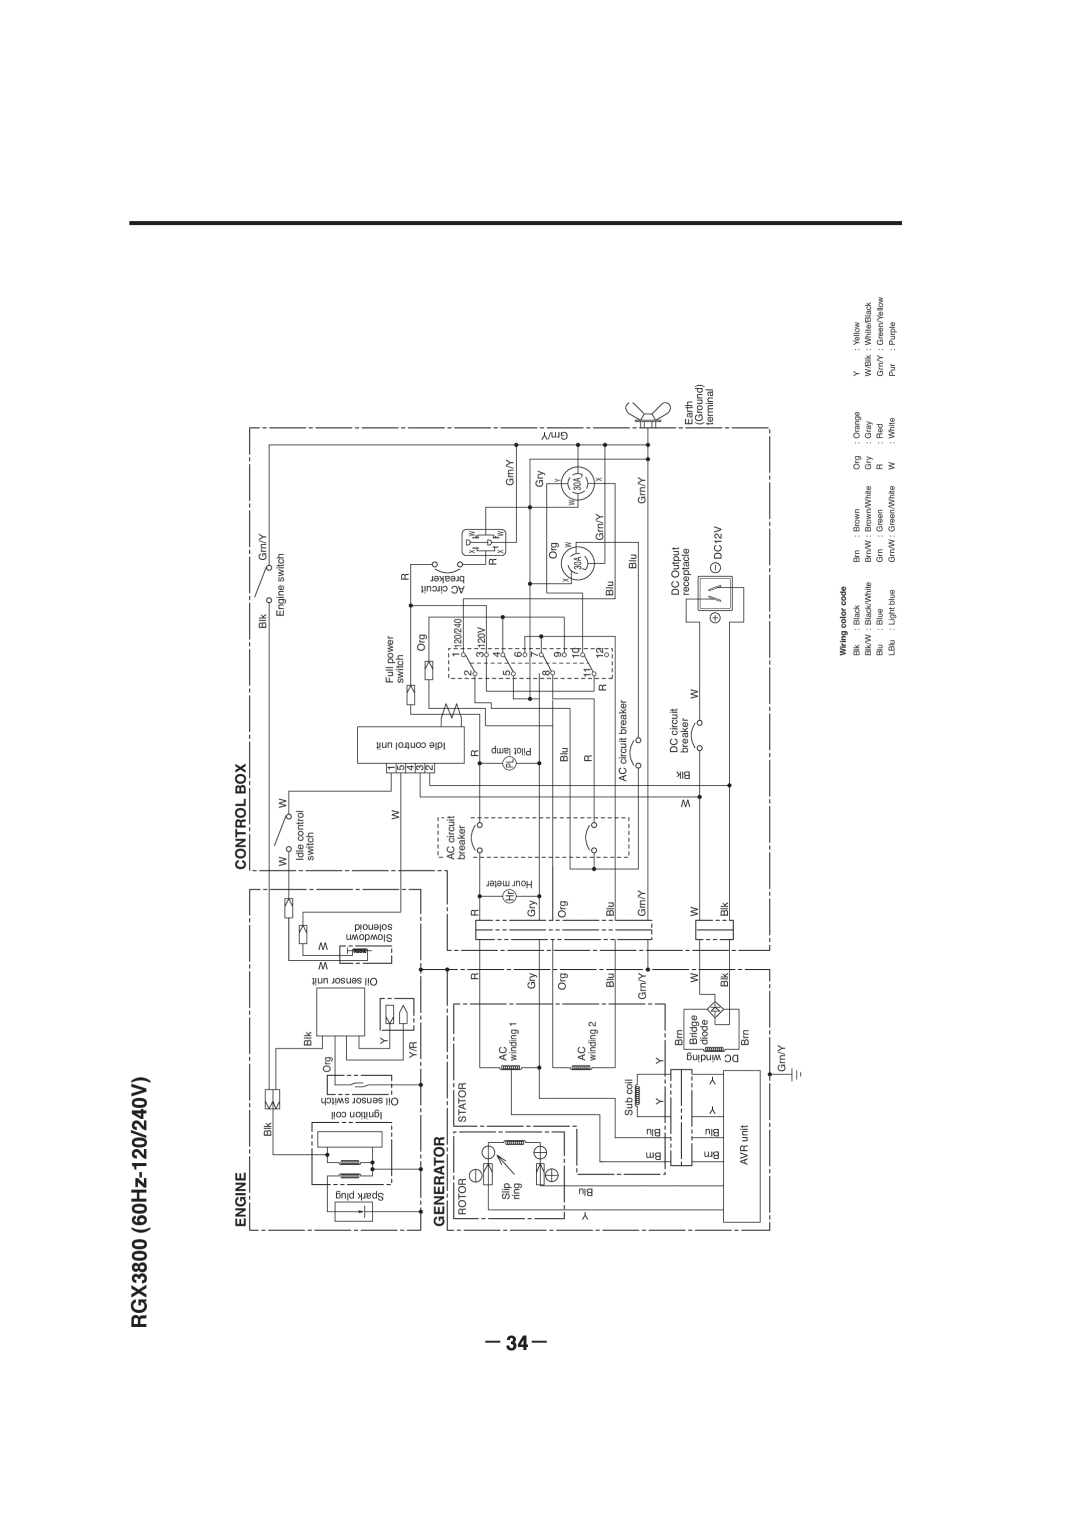 Subaru RGX7100, RGX7800, RGX3000, RGX5100 manual － 34－, RGX3800 60Hz-120/240V, Engine, Generator, Control Box 